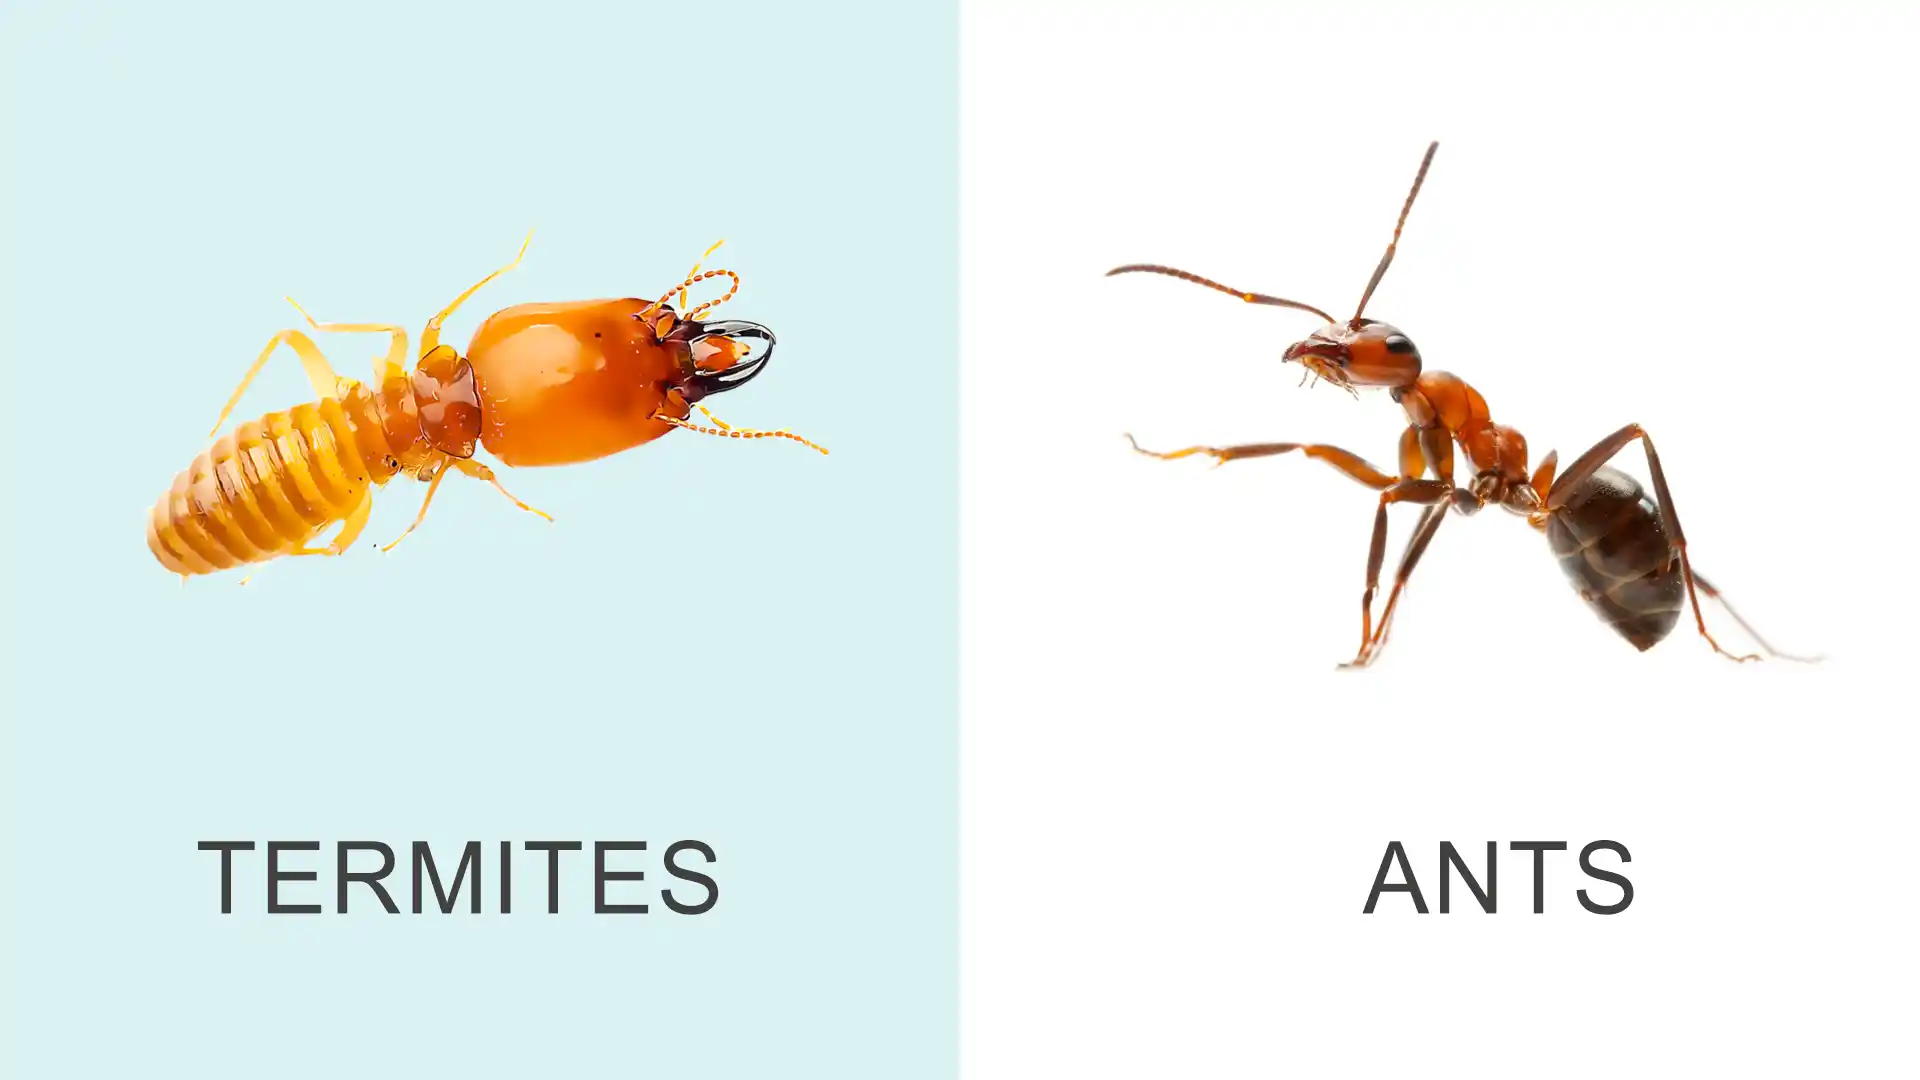 White ants vs termites